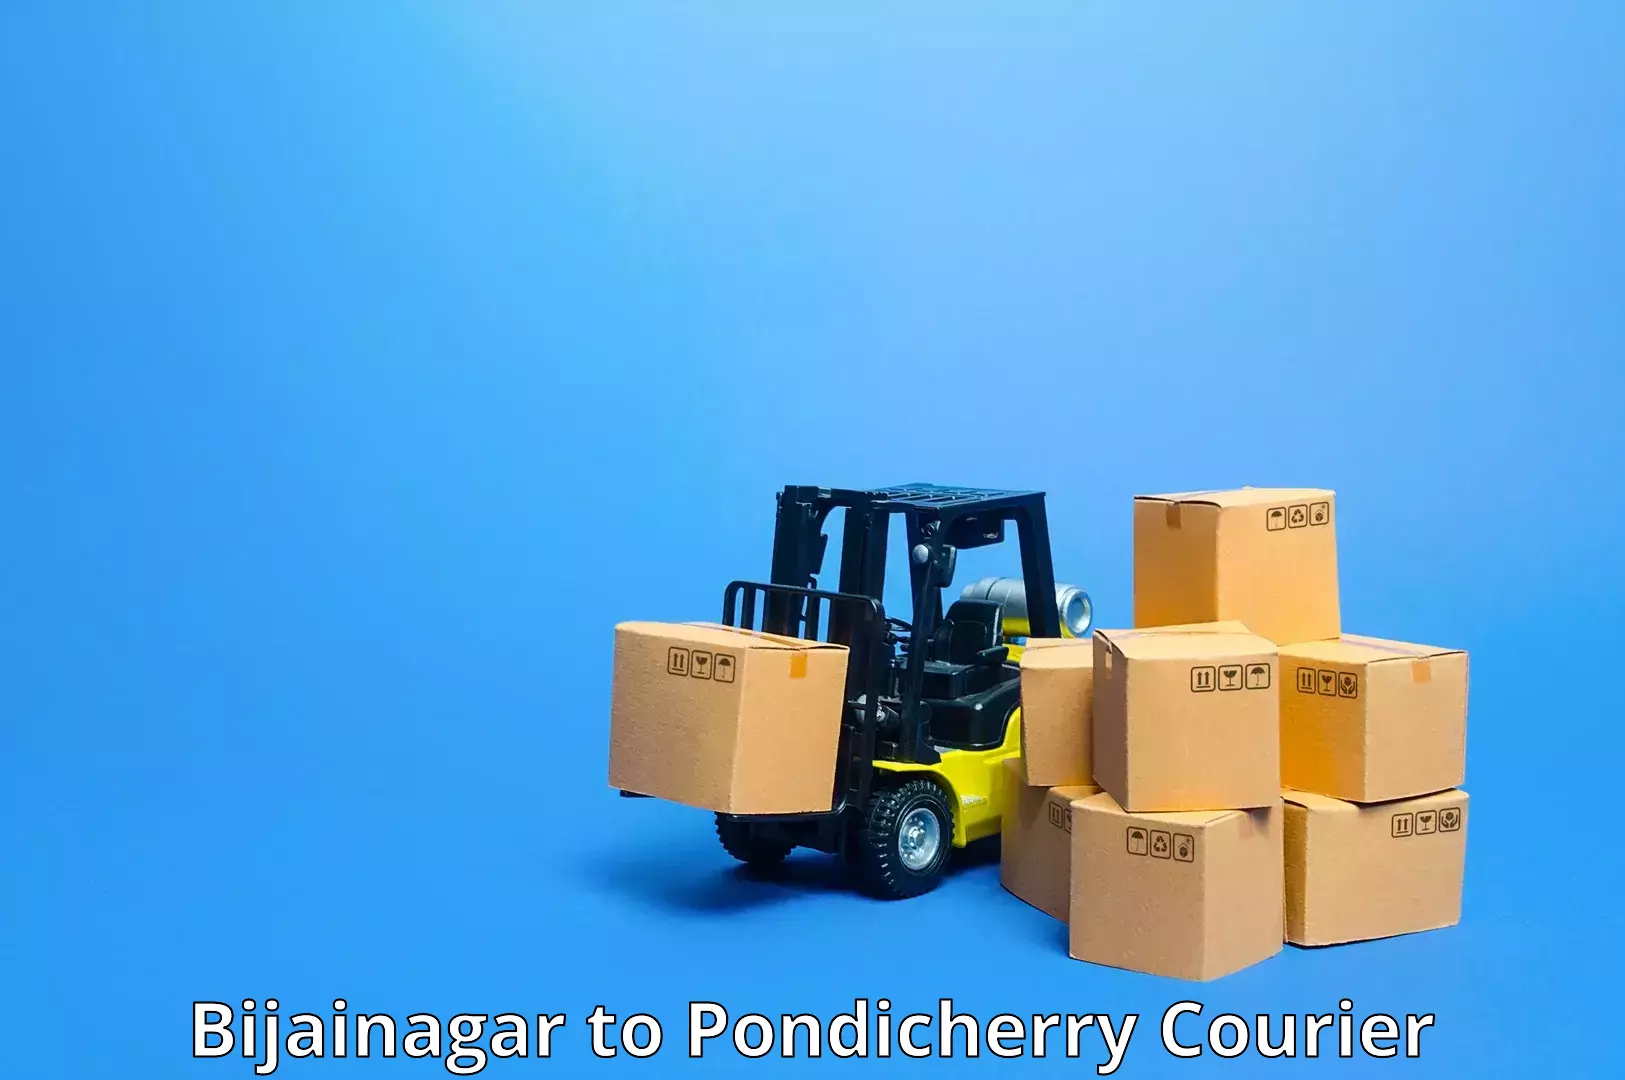 Cost-effective courier options Bijainagar to Pondicherry